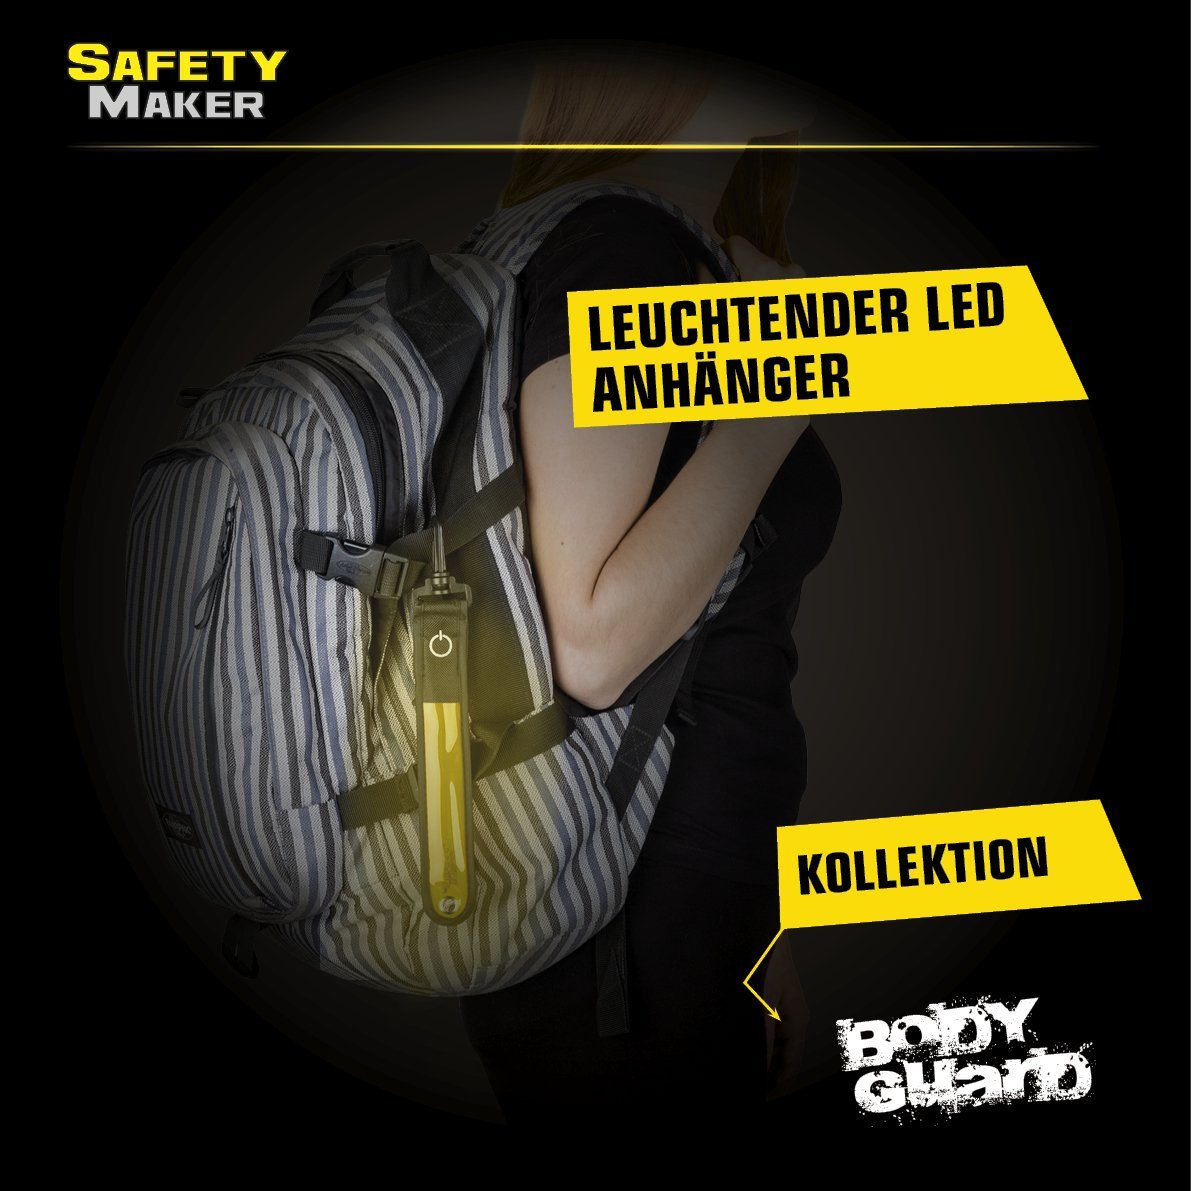 LED Anhänger gelb, Sicherheitsbekleidung, Reisezubehör